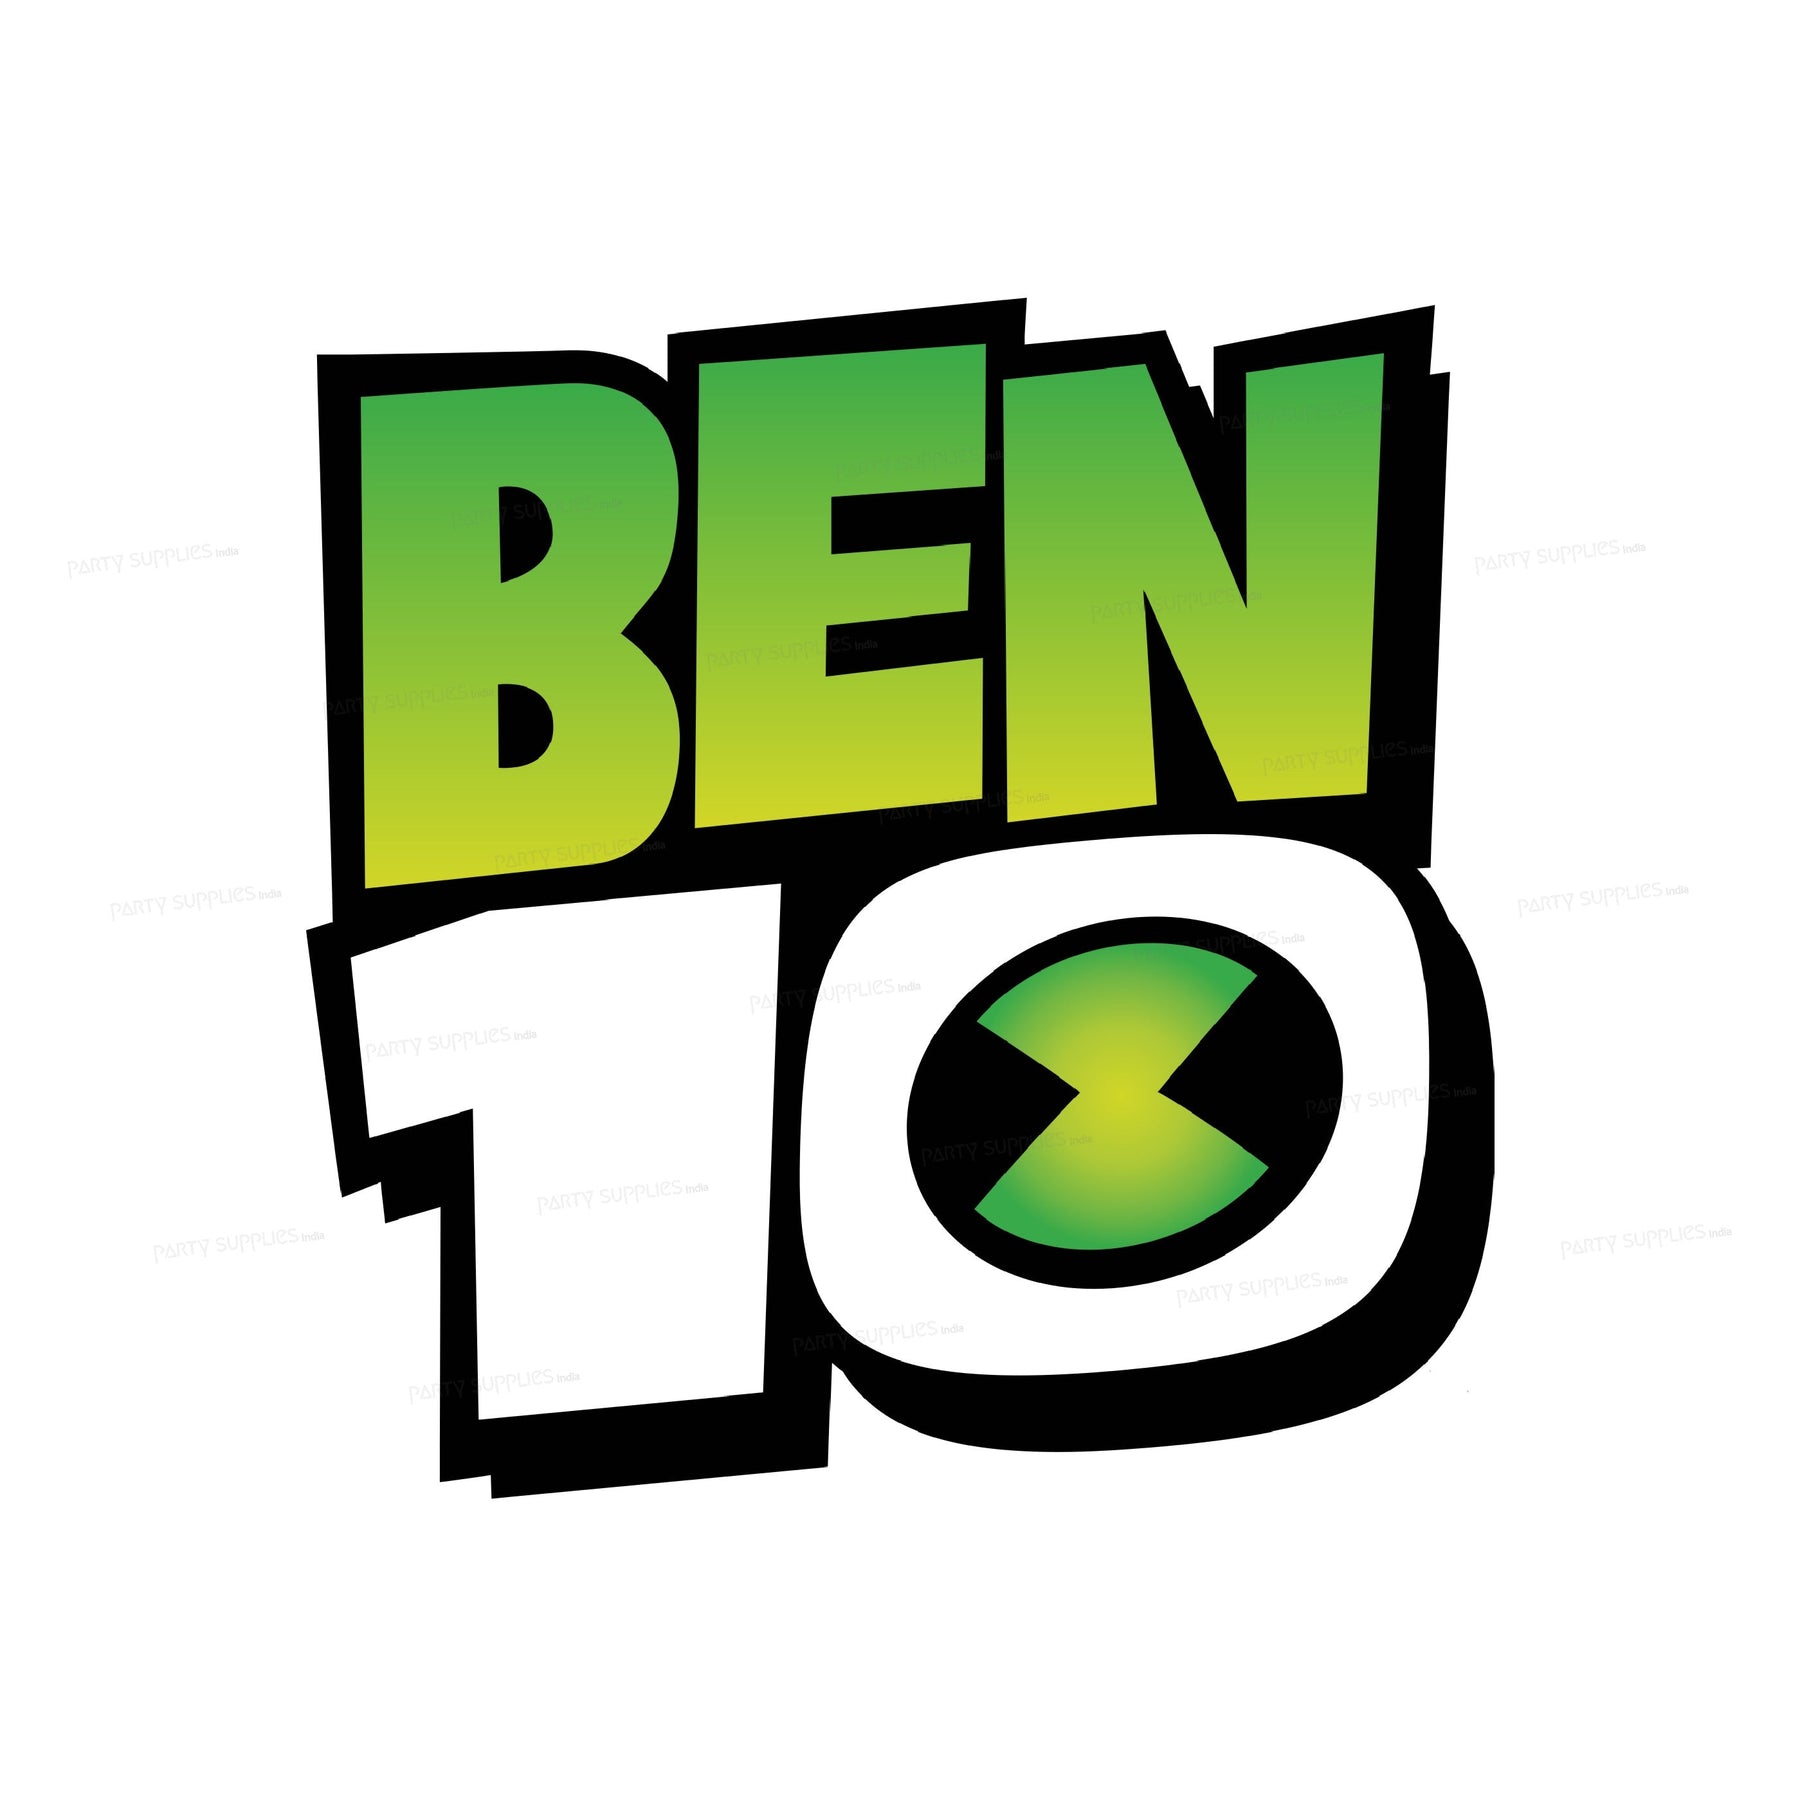 PSI Ben 10 Theme Cutout - 33